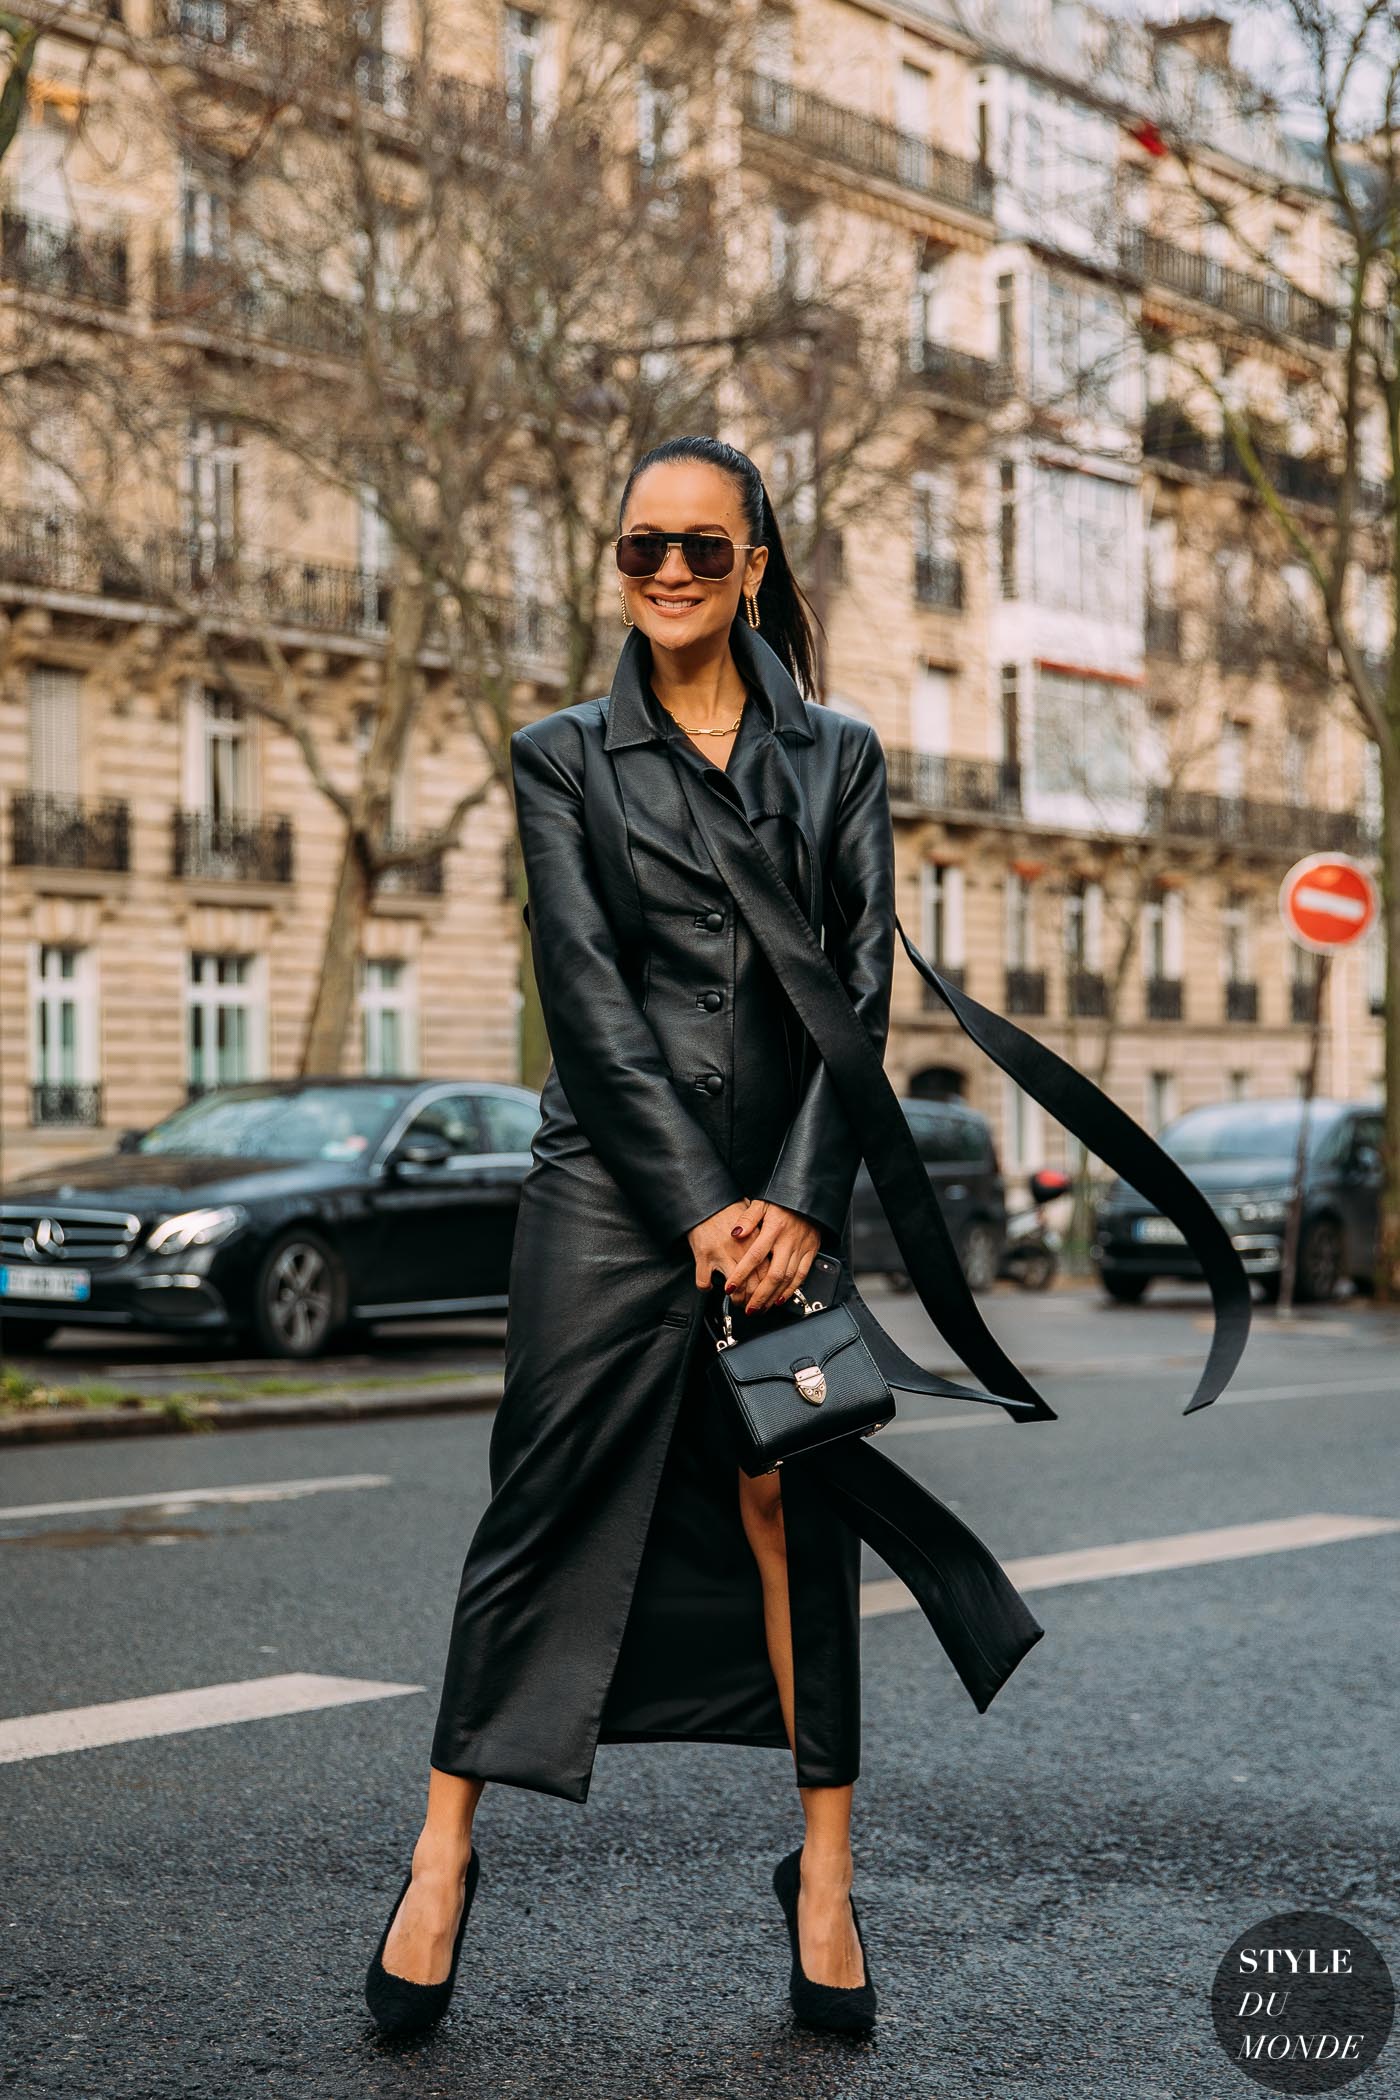 Paris SS 2020 Street Style: Anna Rosa Vitiello - STYLE DU MONDE ...